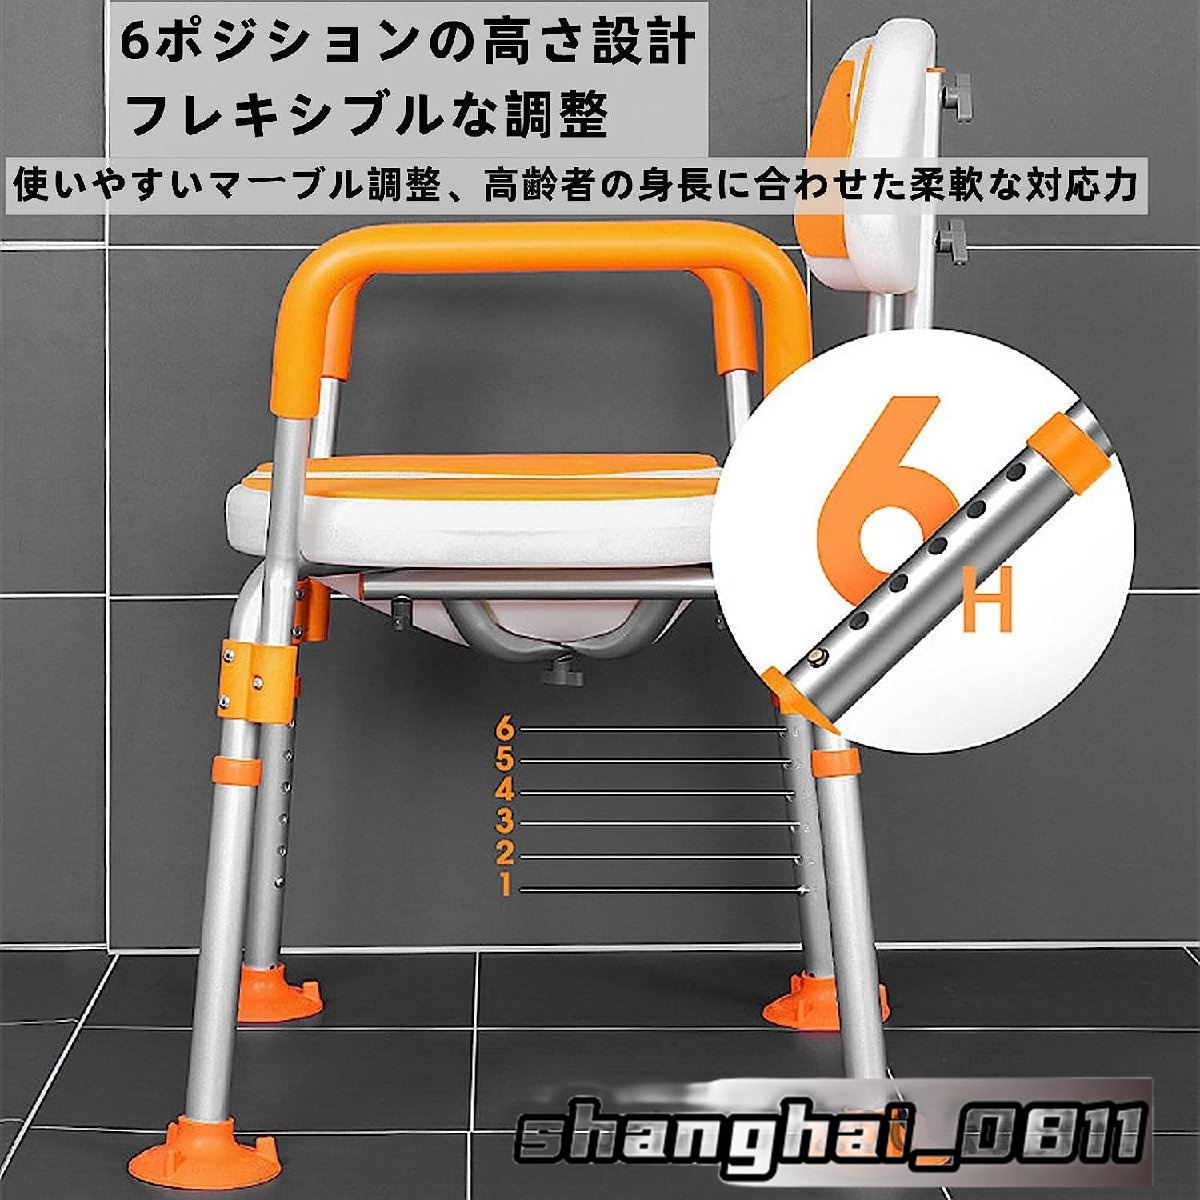  ванна для стул ванна стул уход душ стул товары для ухода купальный стул ванна стул для душа стул compact легкий . для стул 6 -ступенчатый высота регулировка возможность 